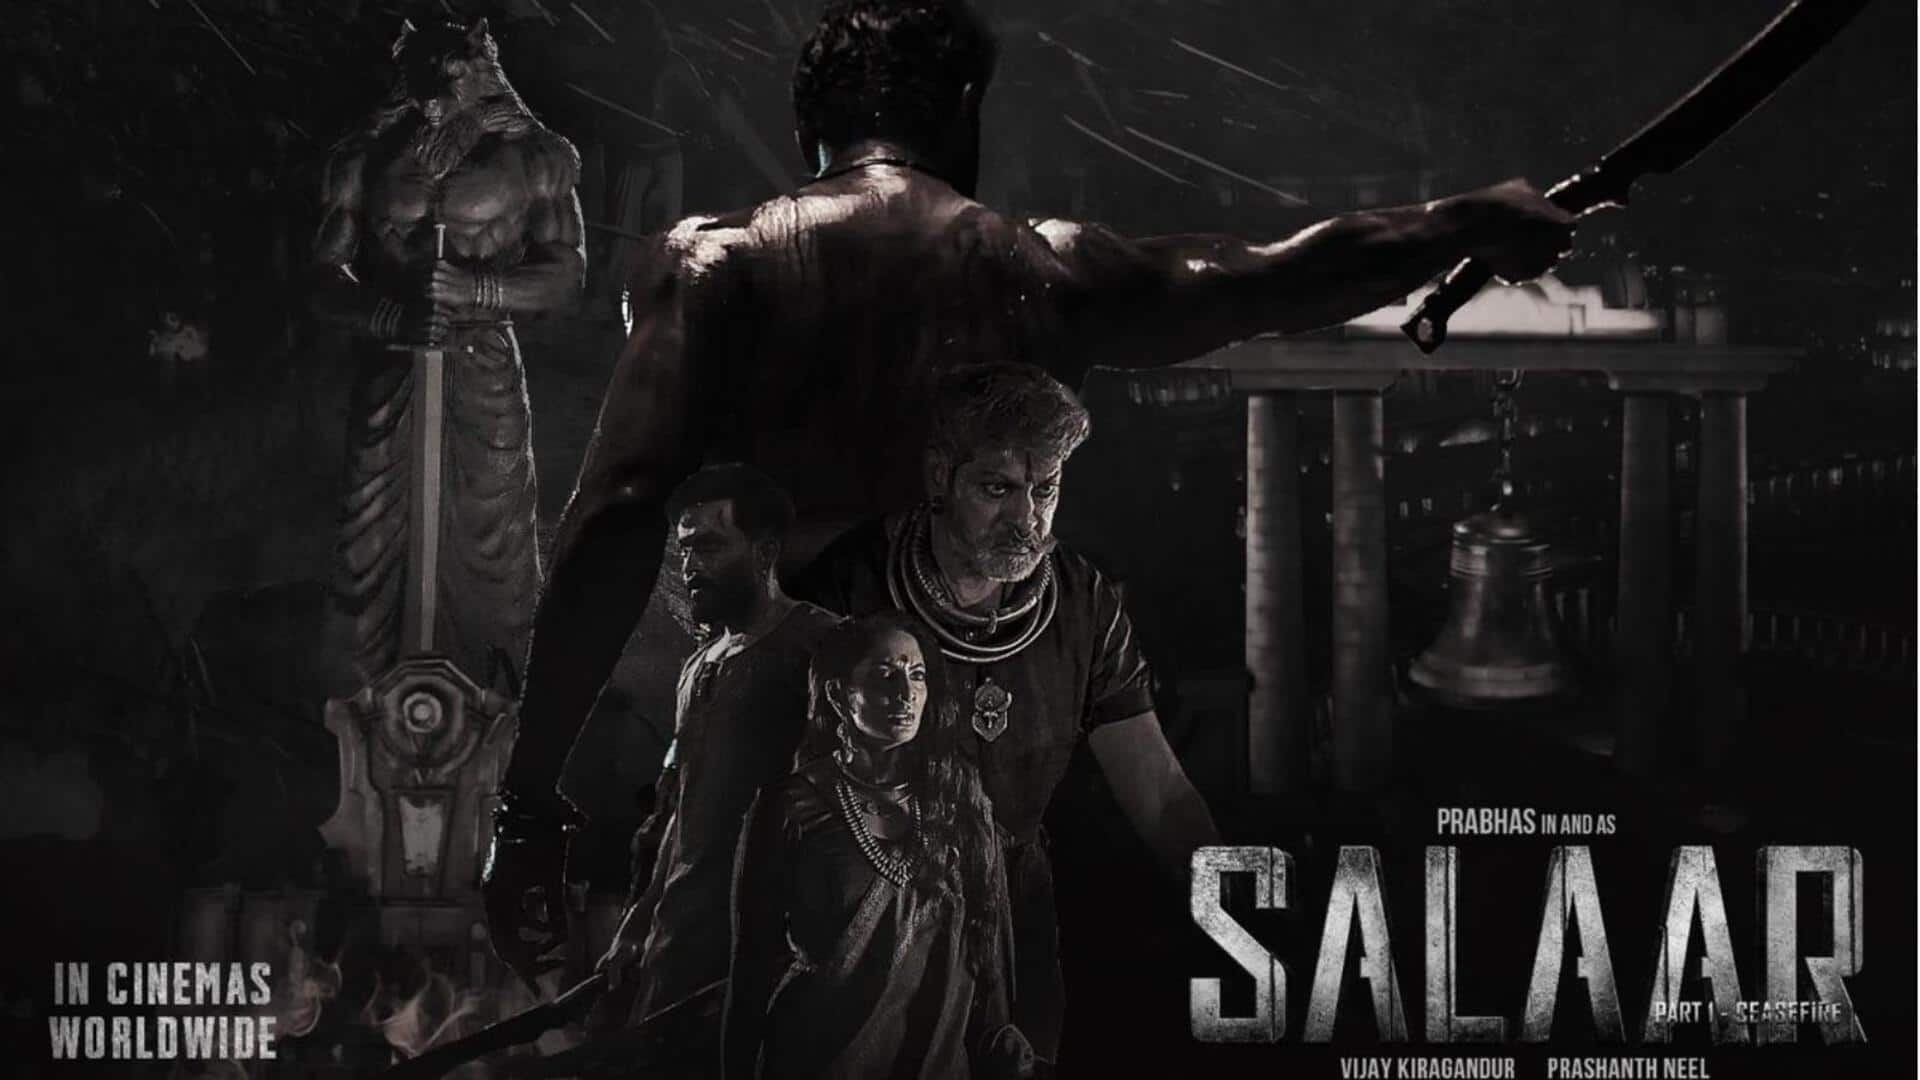 प्रभास की फिल्म 'सलार' ने भारत में पार किया 400 करोड़ रुपये की कमाई का आंकड़ा